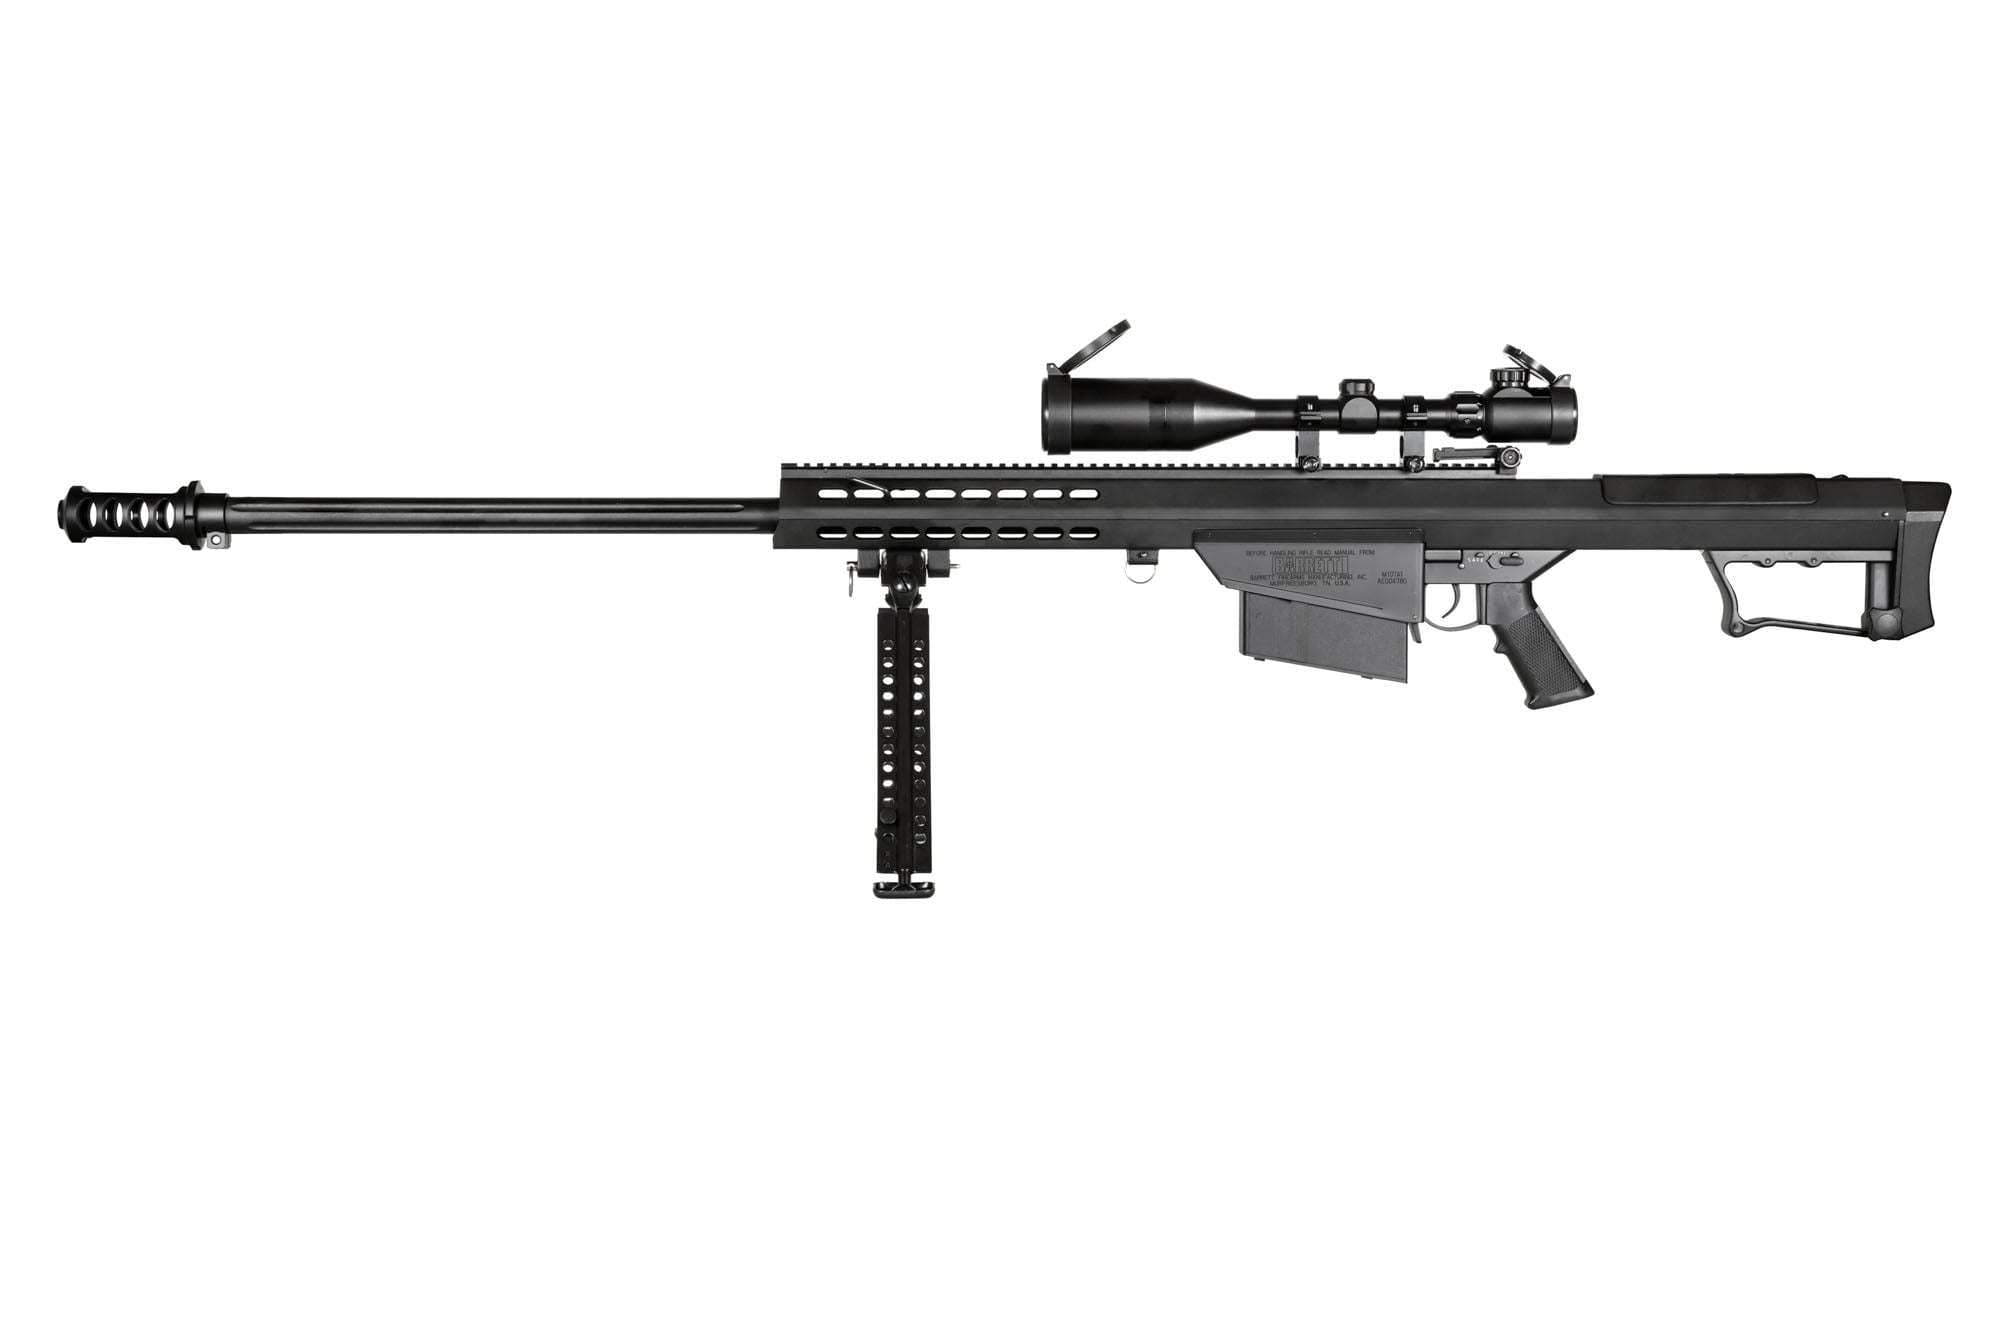 SW-024S sniper rifle replica with bipod&scope - Black